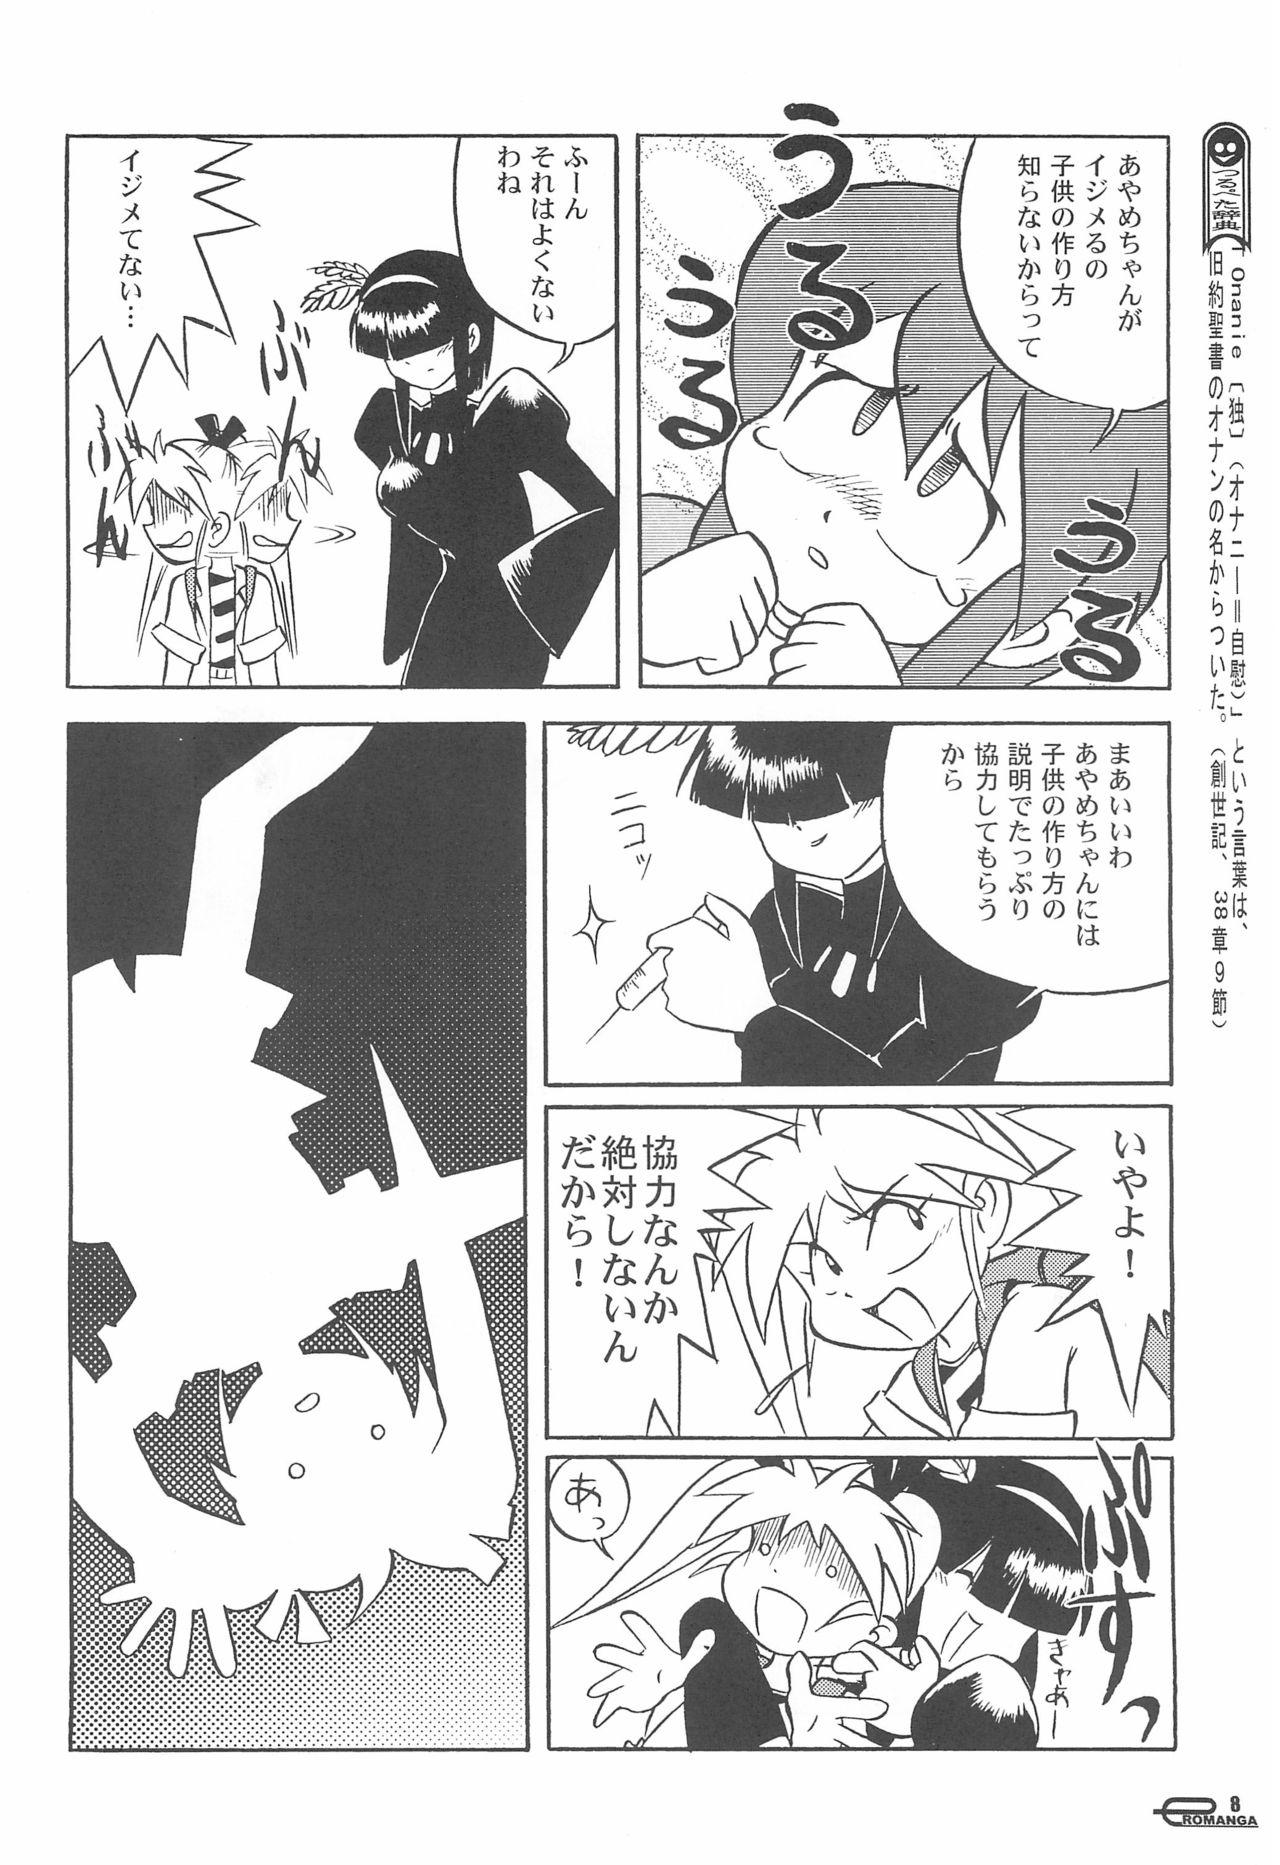 Interacial Manga Science Onna no ko no Himitsu - Manga science Dancing - Page 10